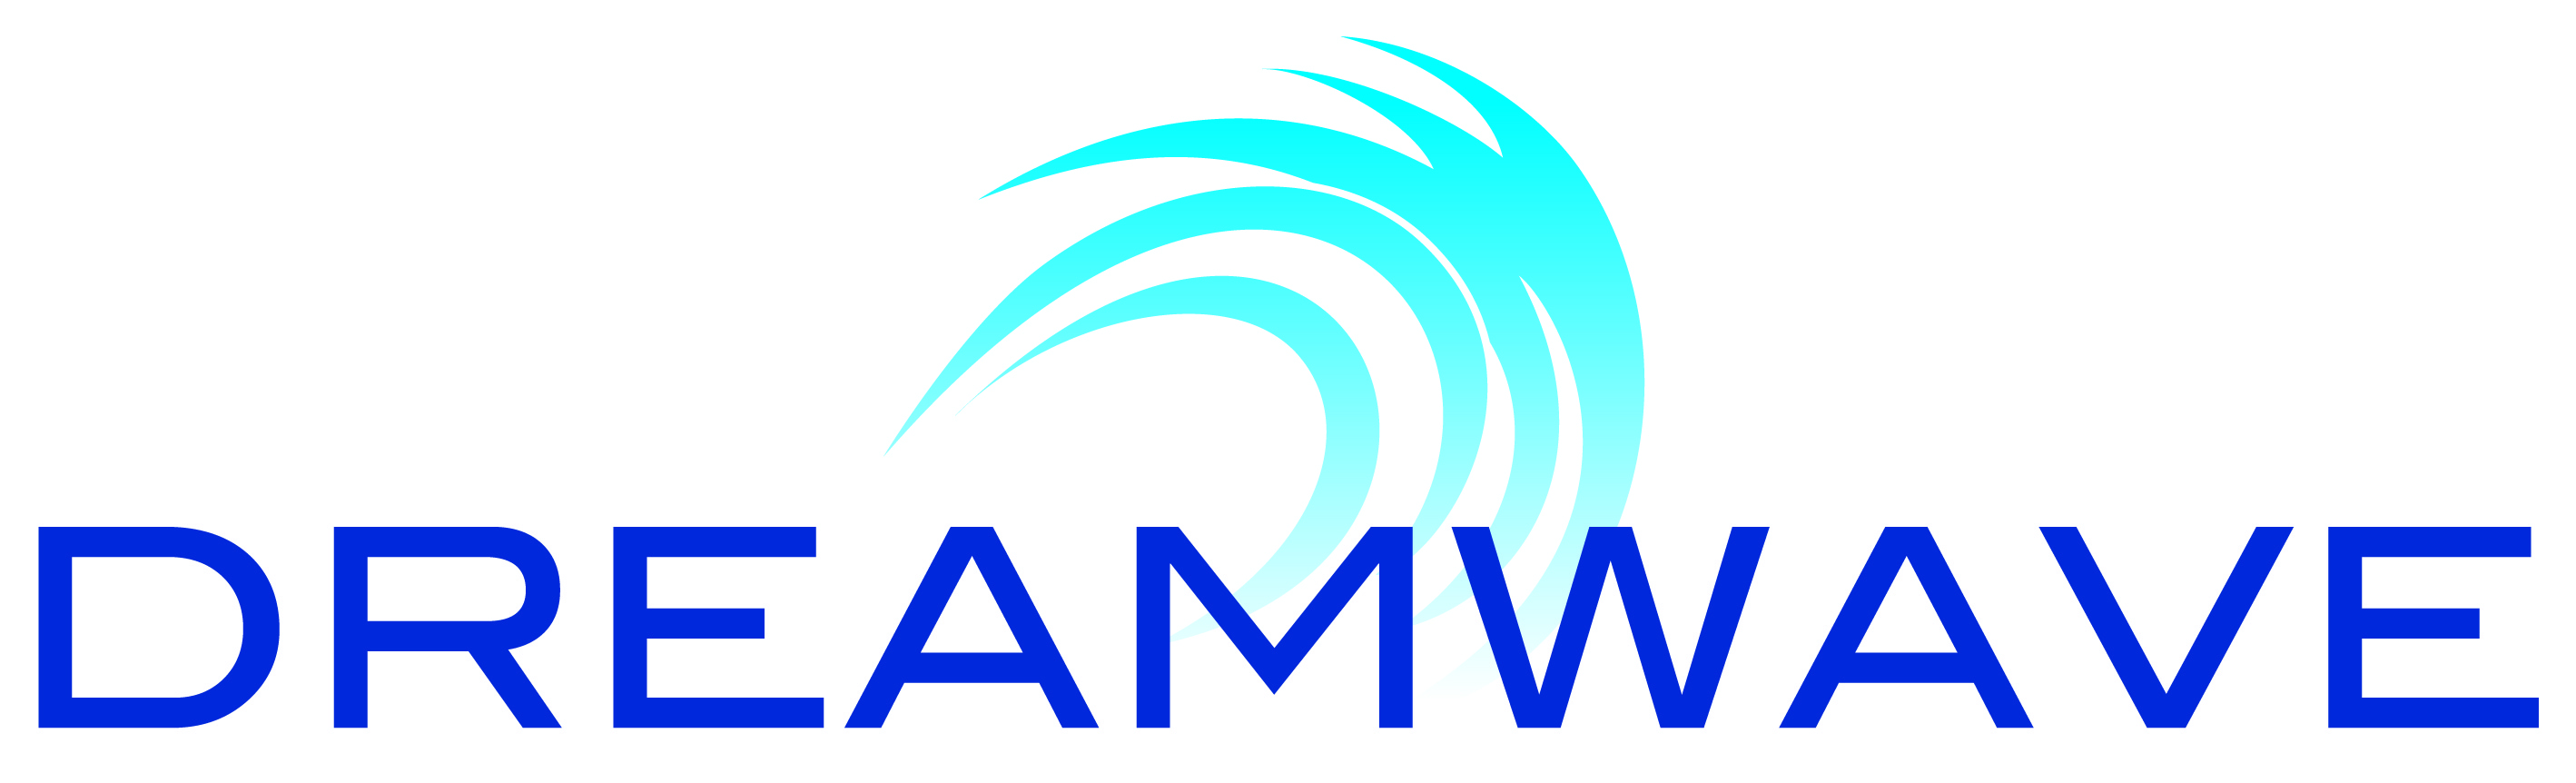 Dreamwave, LLC logo